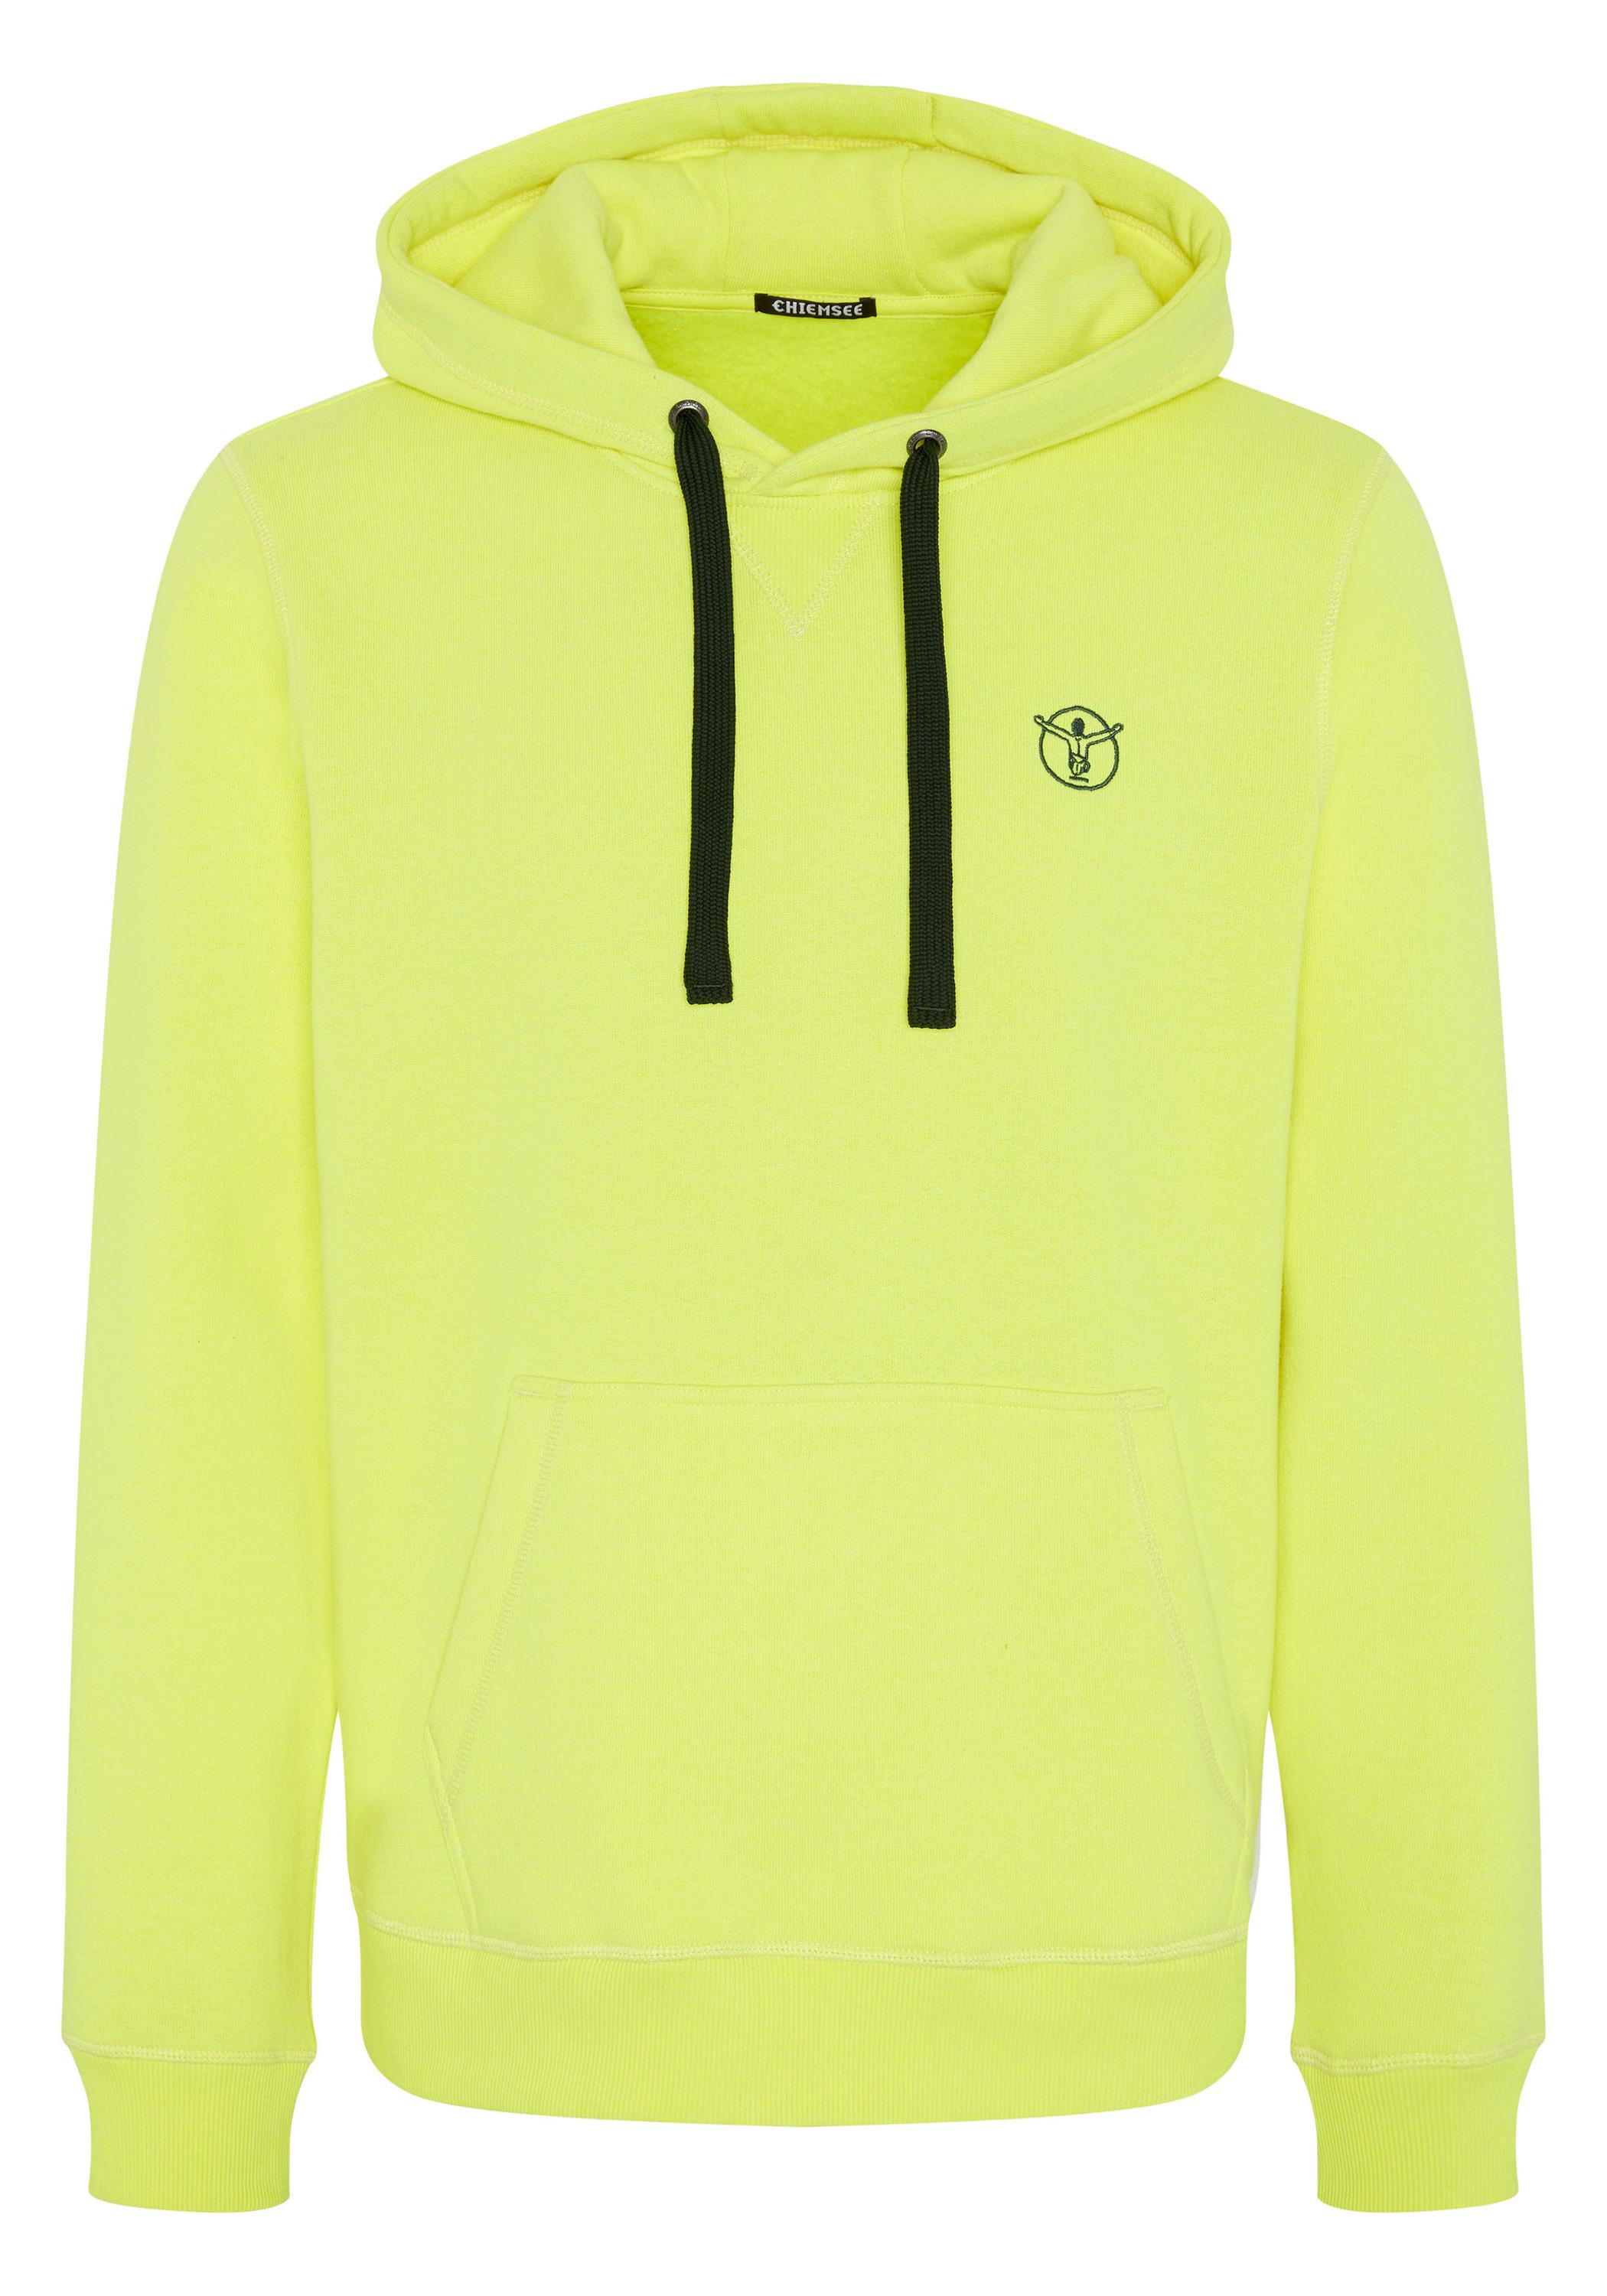 Chiemsee Kapuzensweatshirt Sweatshirt Herren Safety Yellow SportScheck von kaufen Shop im Online